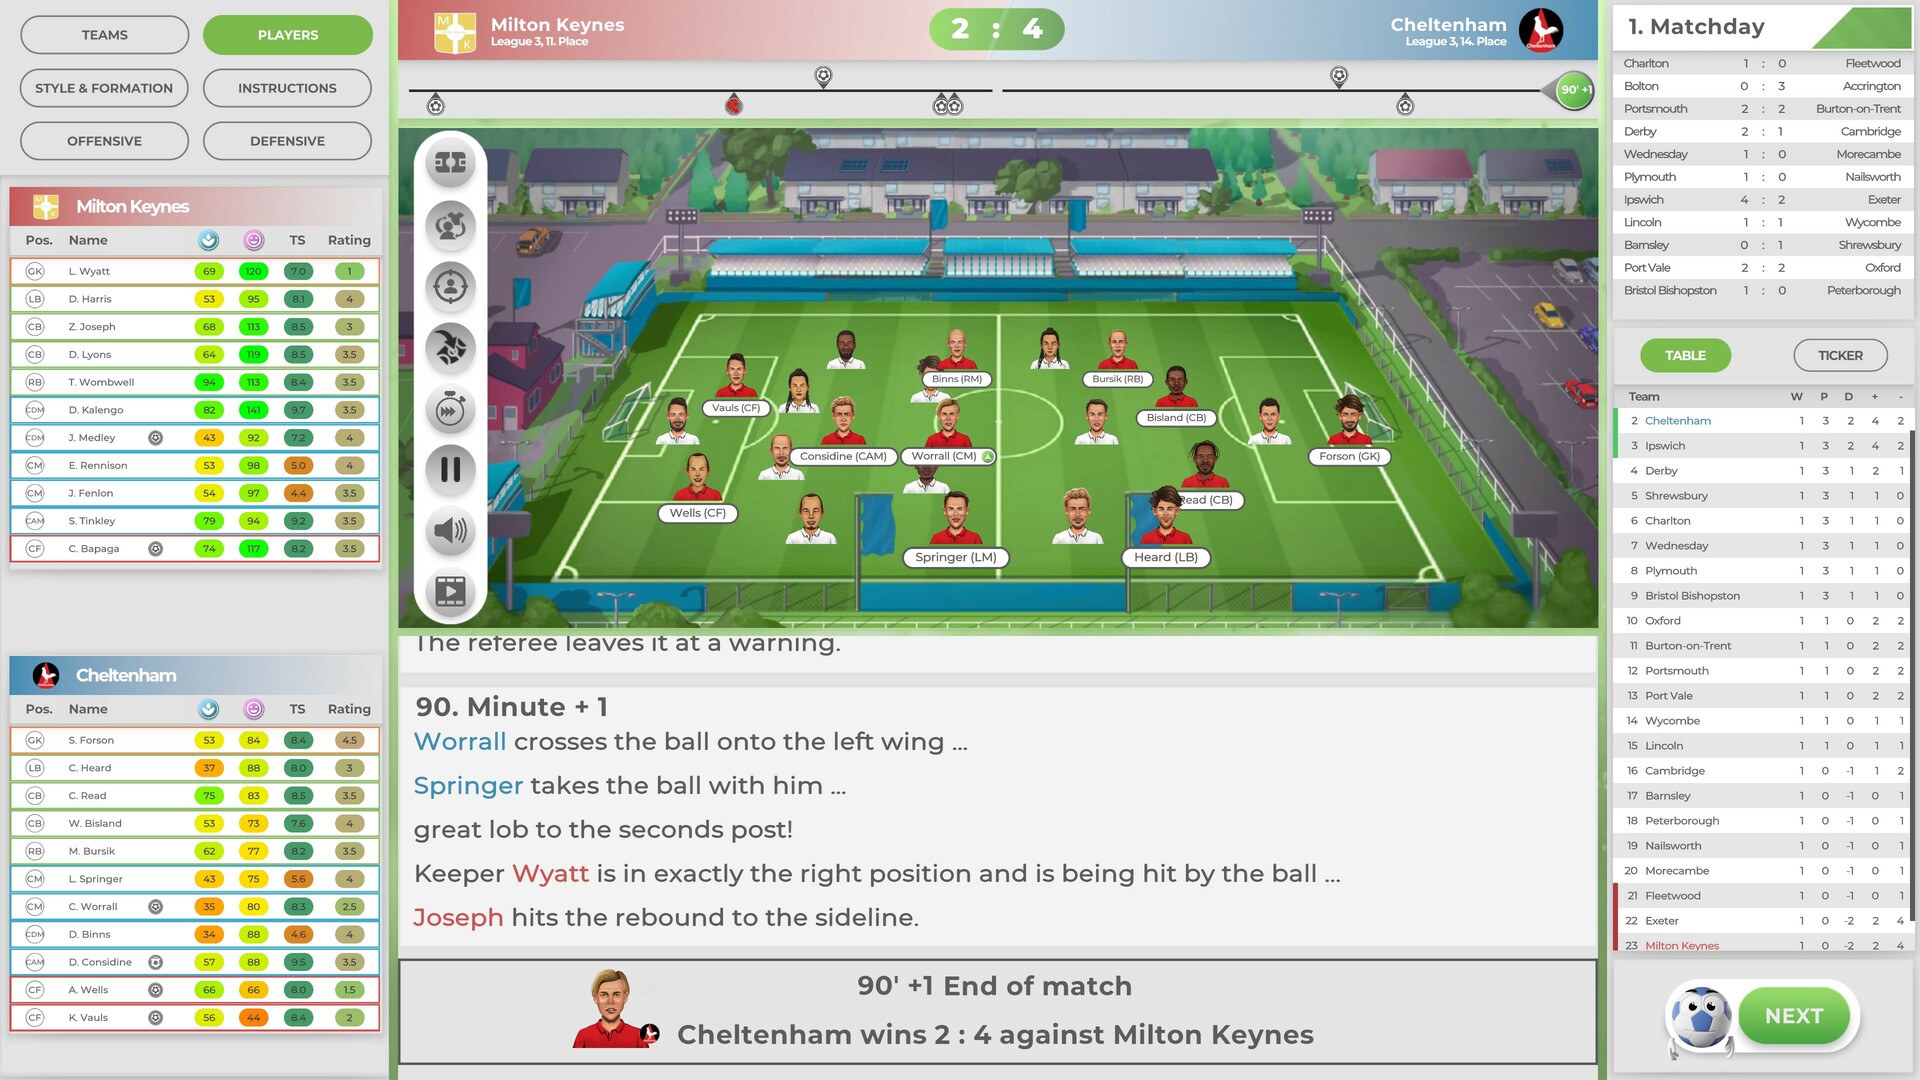 Anstoss 2022: Der Fussballmanager Early Access PC Steam Digital